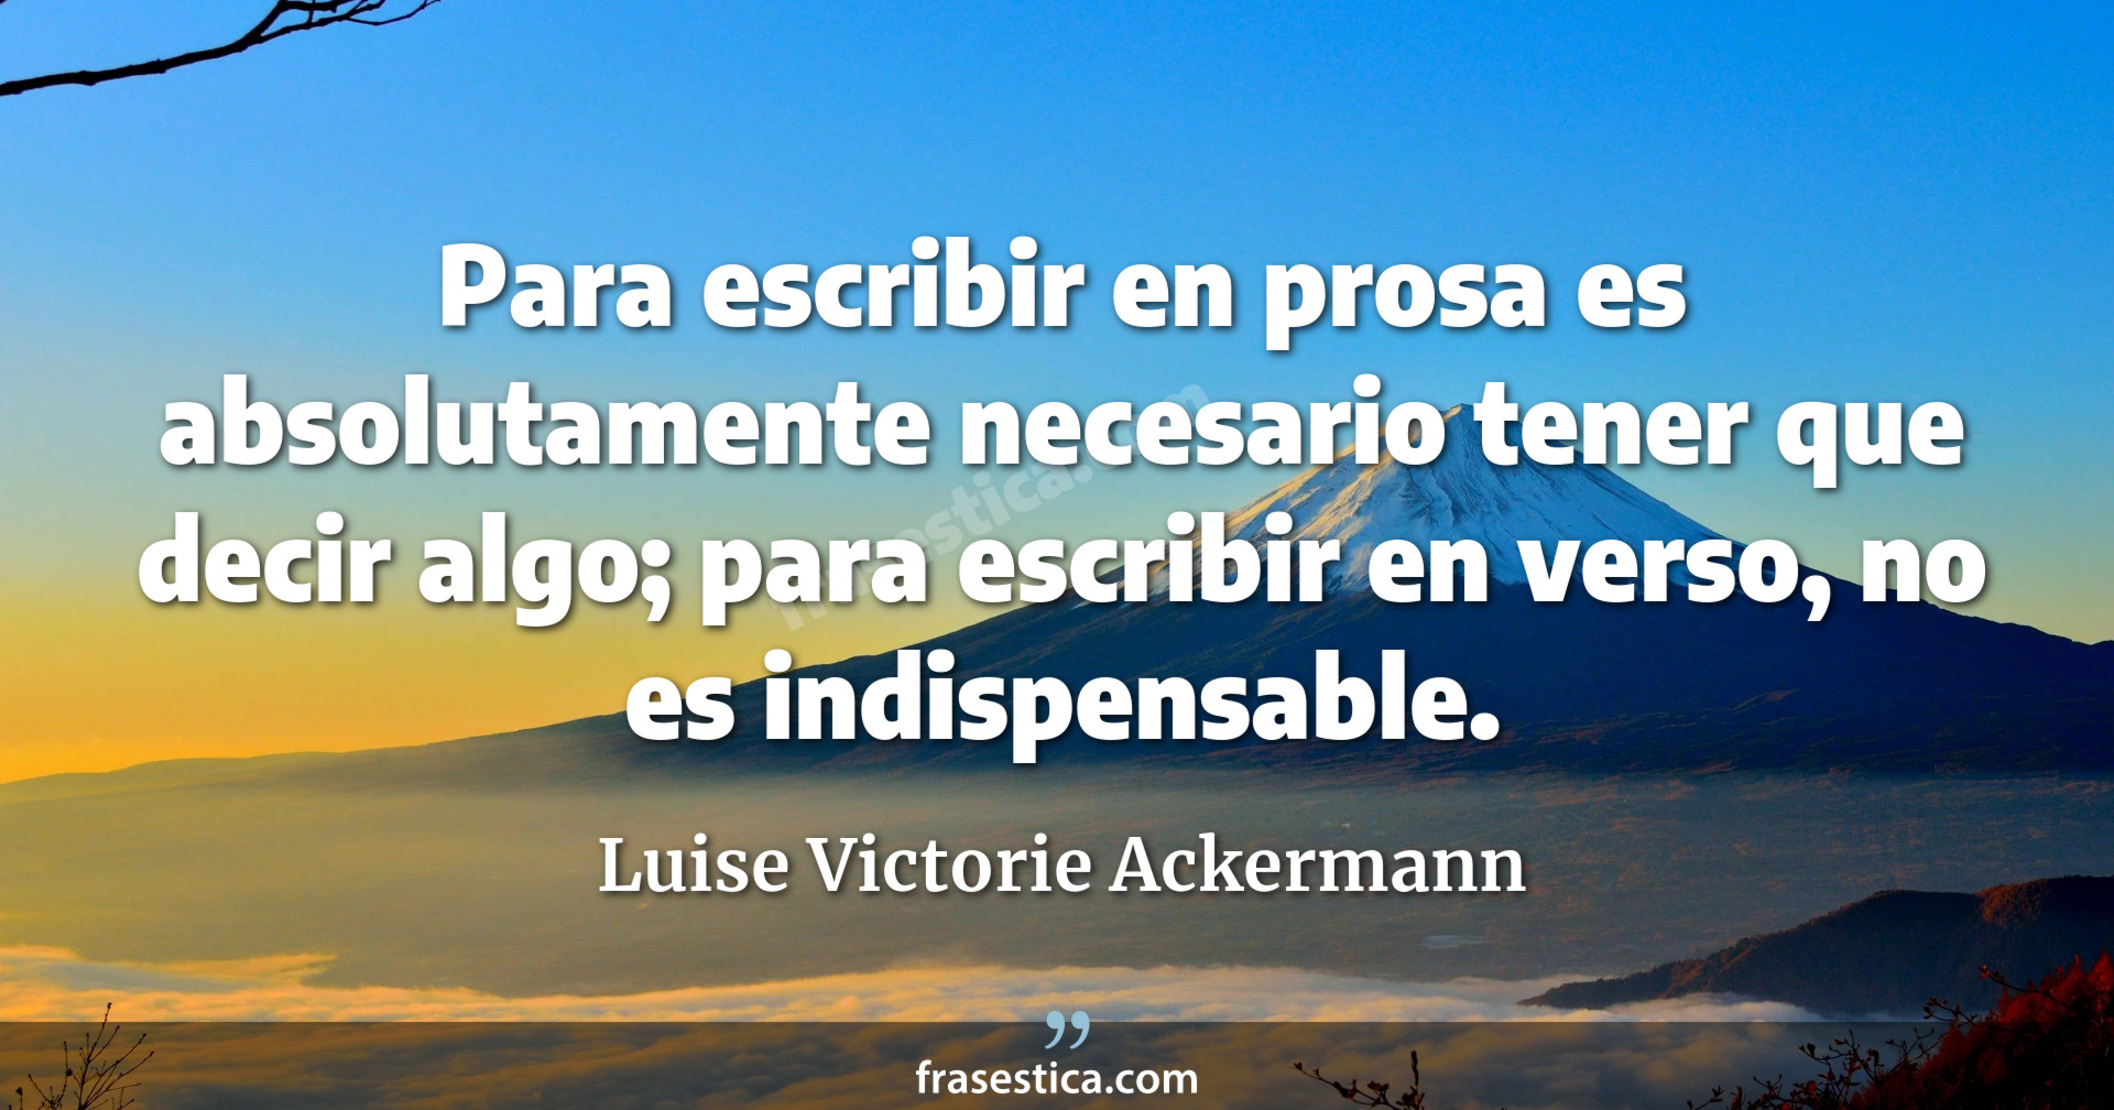 Para escribir en prosa es absolutamente necesario tener que decir algo; para escribir en verso, no es indispensable. - Luise Victorie Ackermann